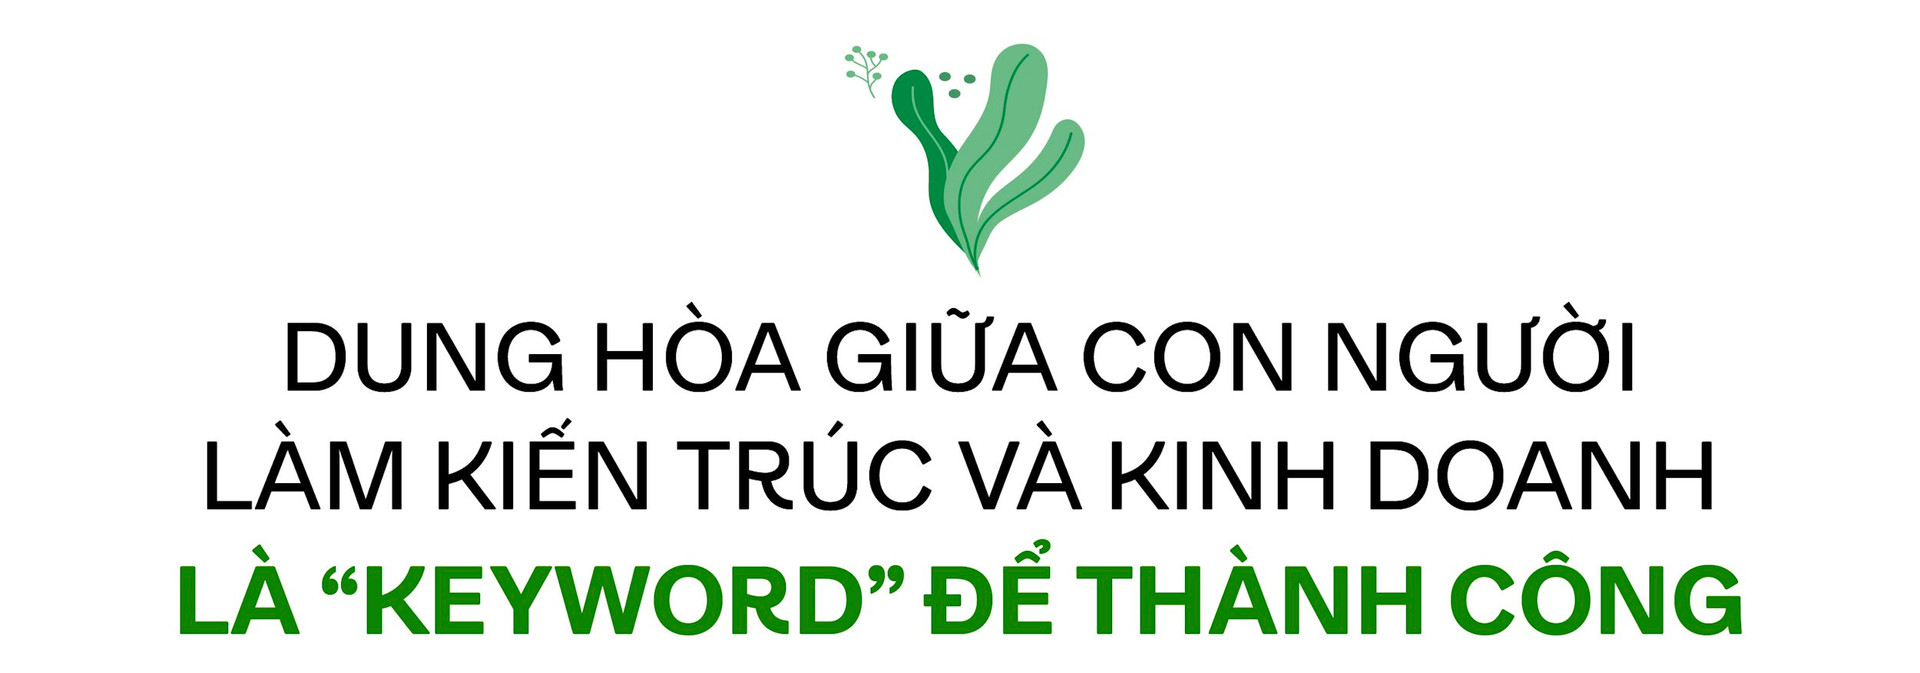 Từ kho nhỏ bán cây đến thương hiệu cà phê xanh có tiếng tại Hà Nội, CEO 8x kể chuyện chinh phục phân khúc cao cấp ở “ngách” mới, “tiền không phải vấn đề” với khách hàng - Ảnh 10.